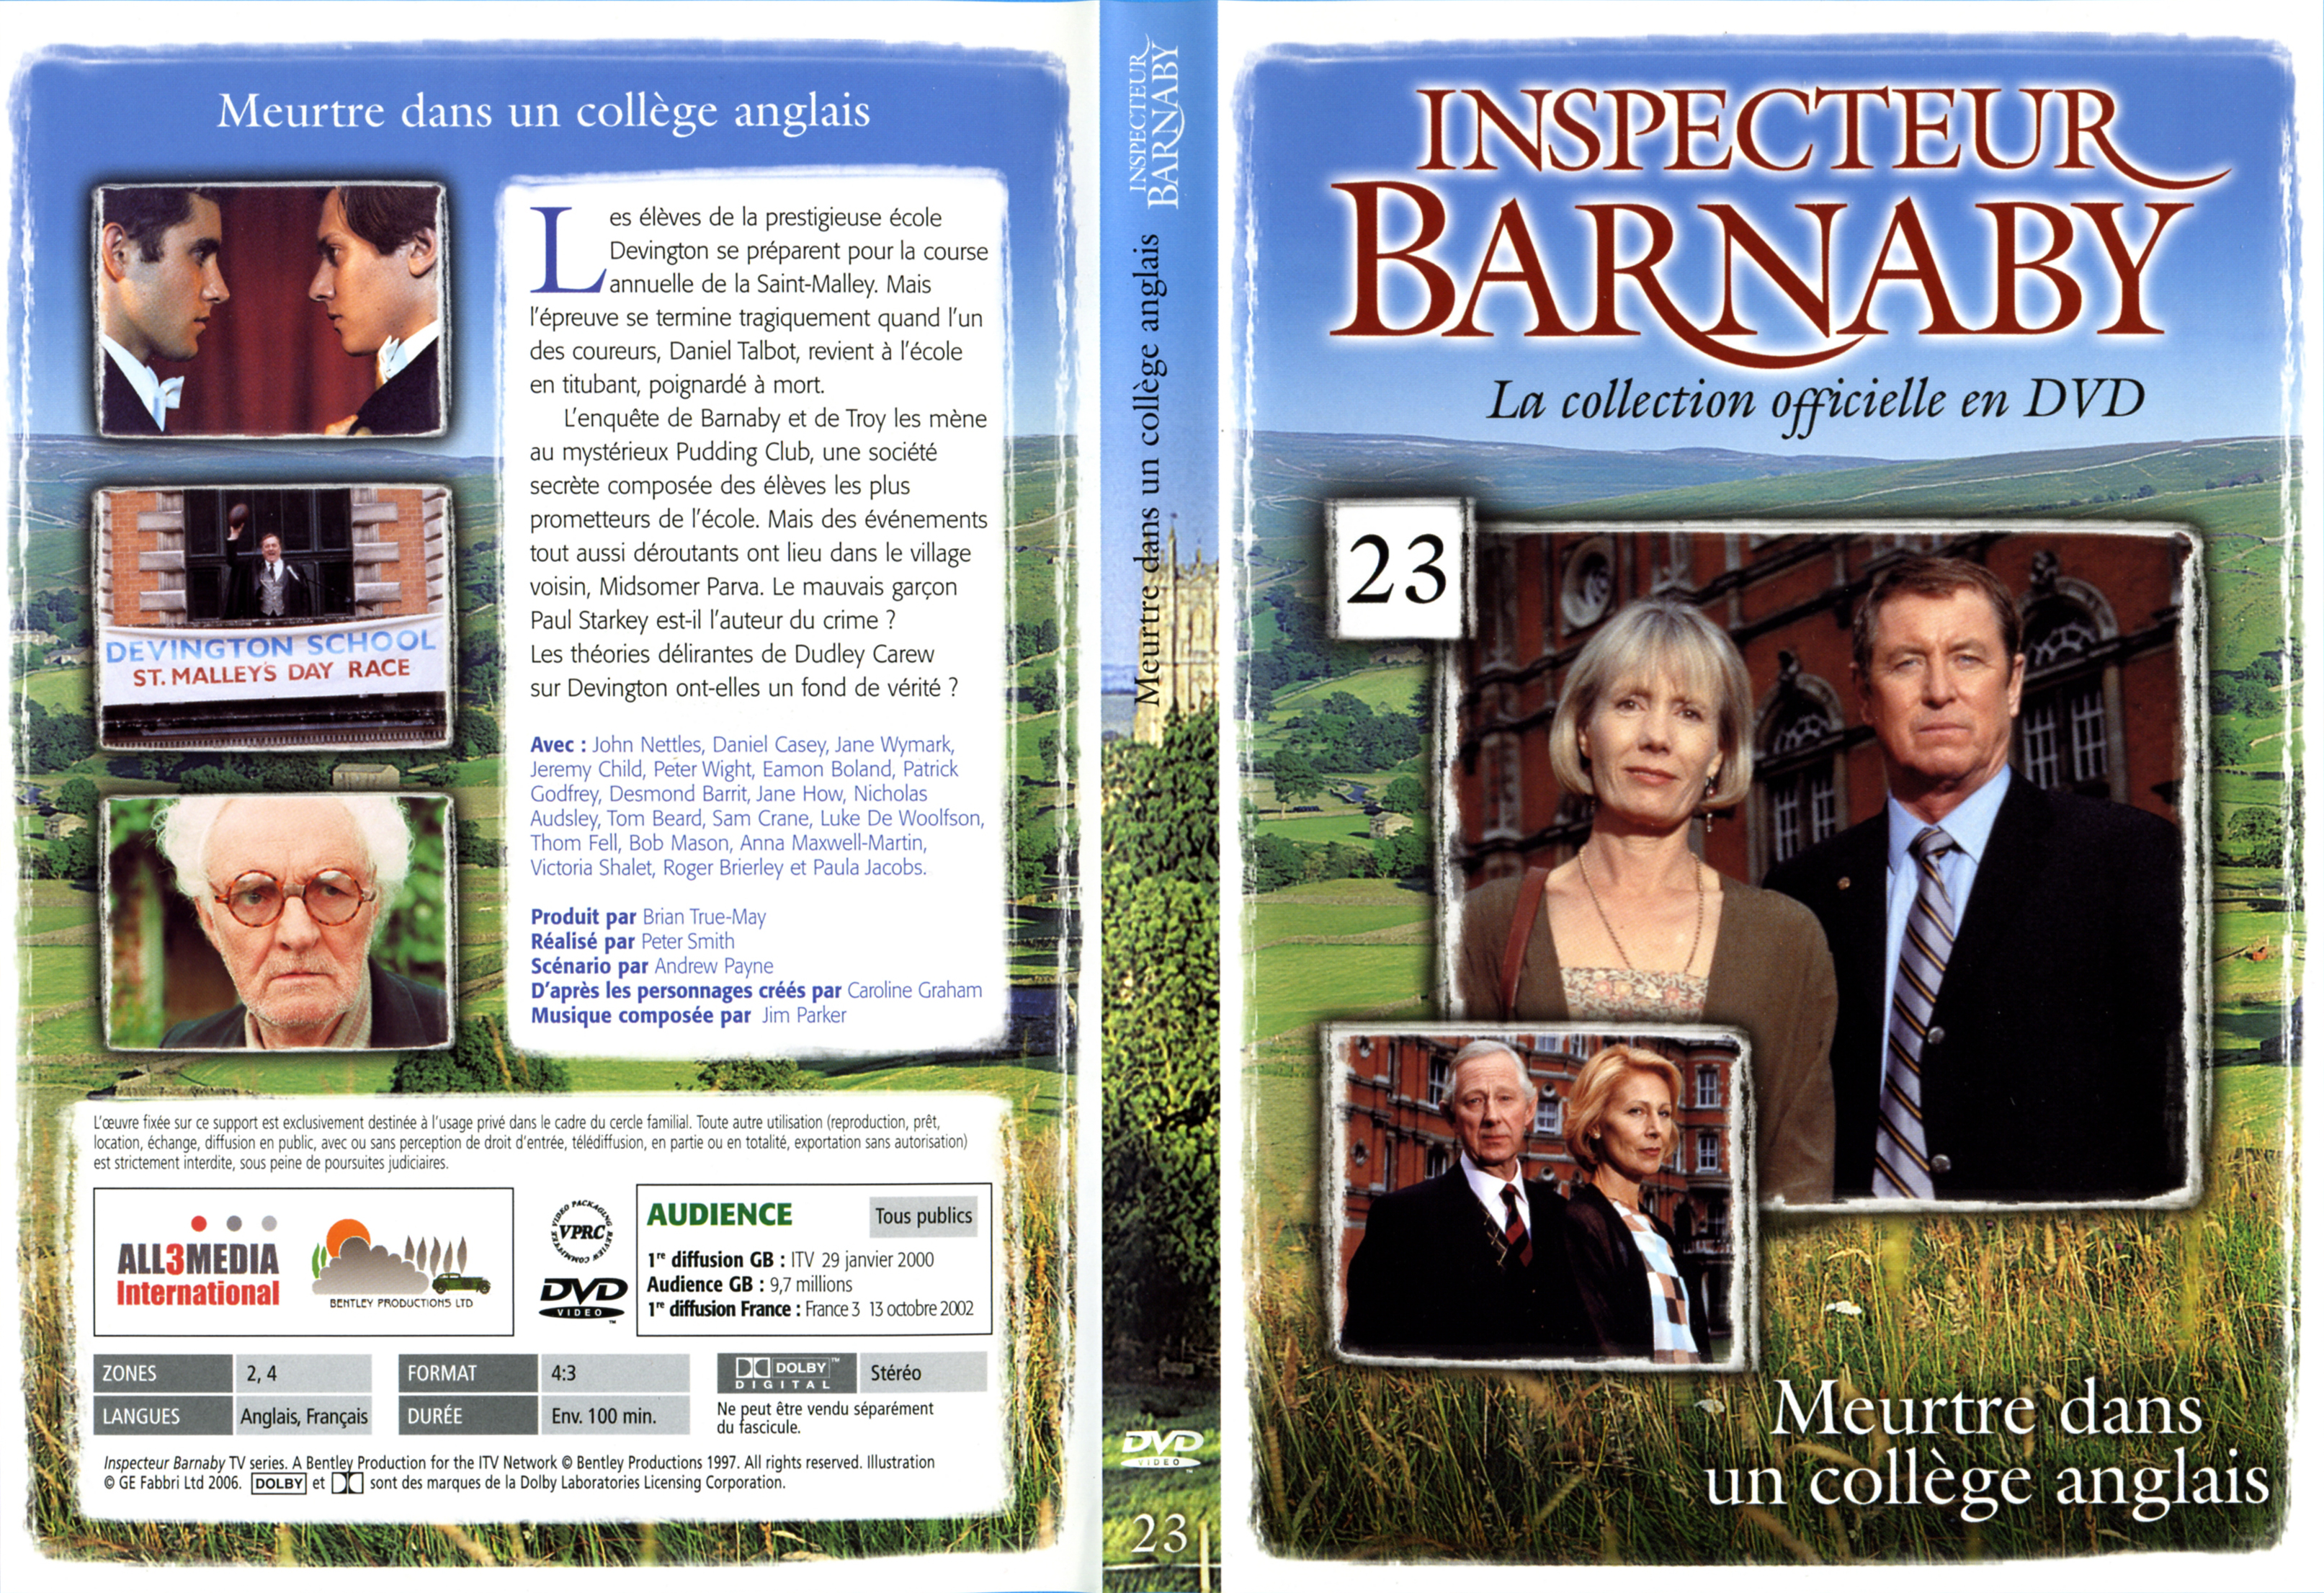 Jaquette DVD Barnaby vol 23 - Meurtre dans un collge anglais